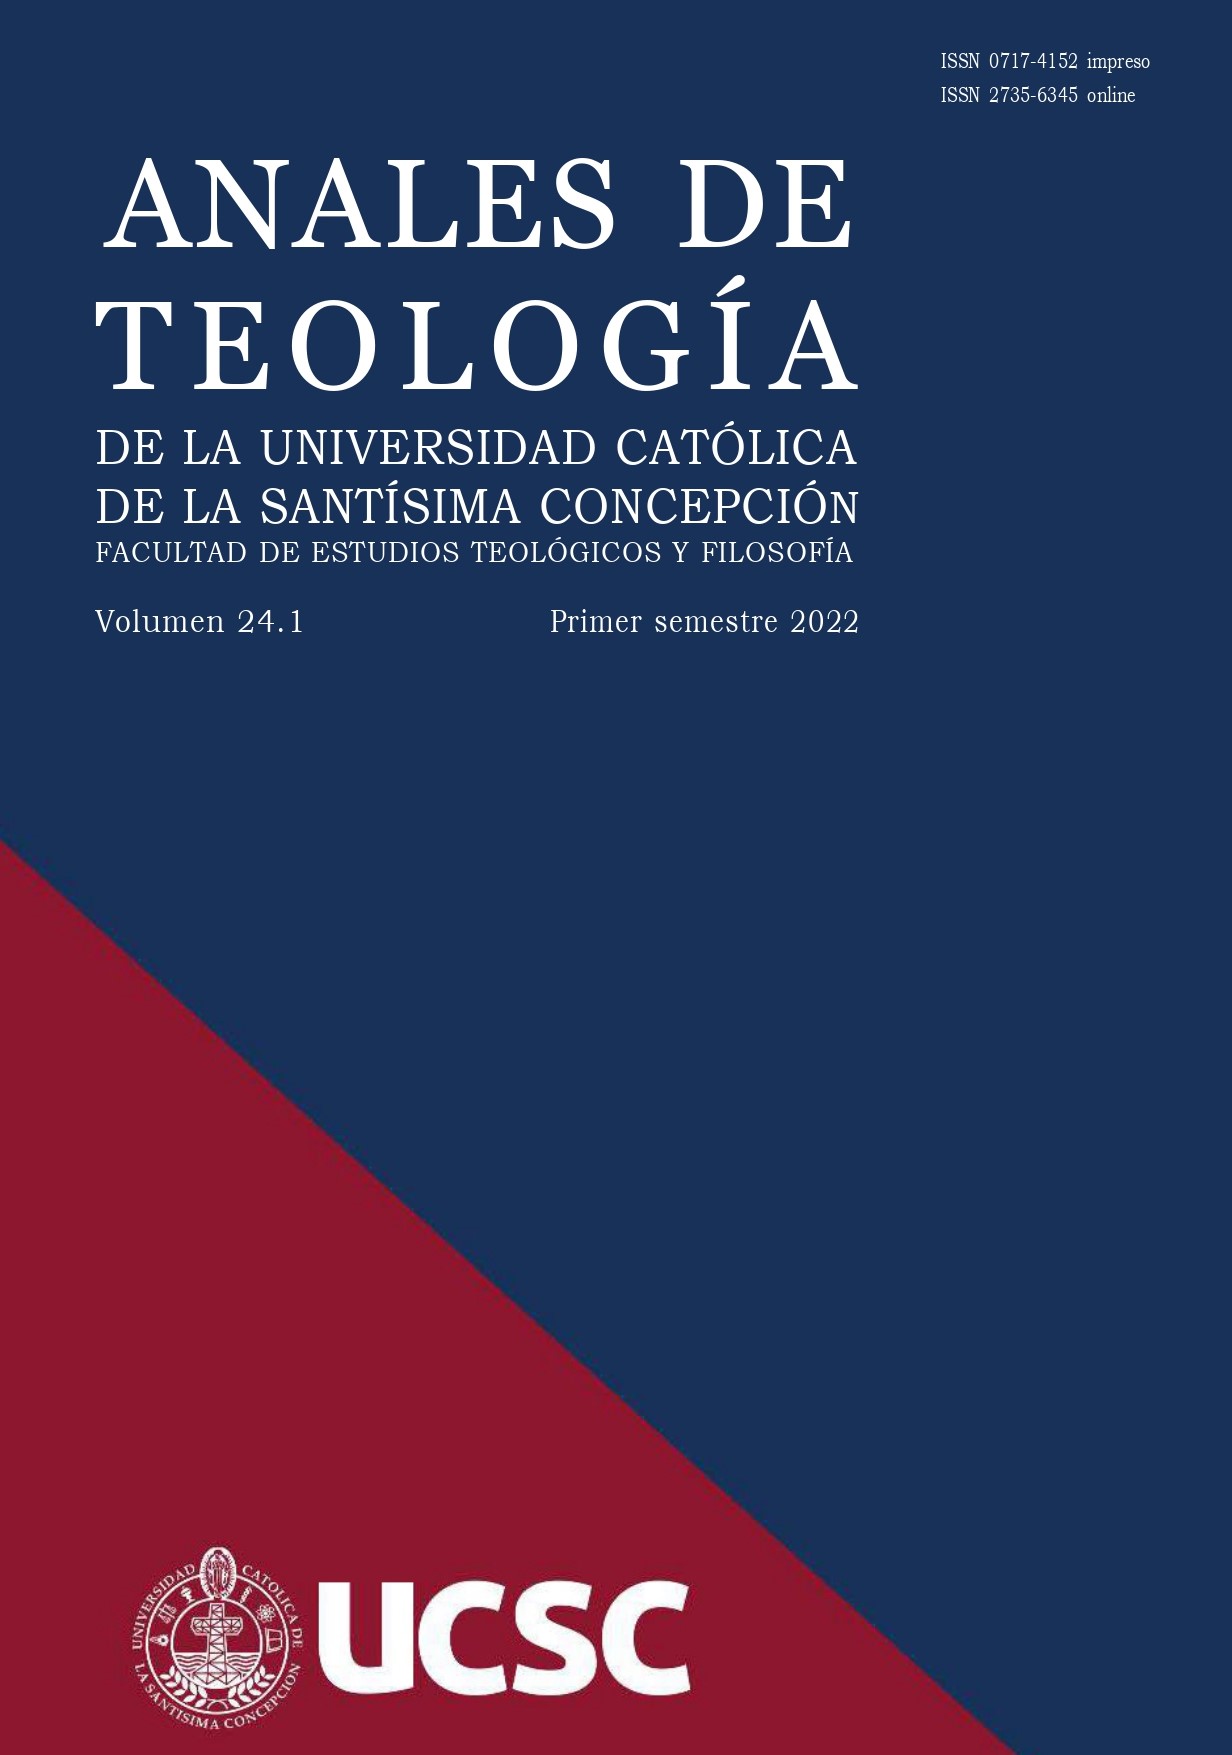 					Ver Vol. 21 Núm. 1 (2019): Anales de Teología | Enero - Junio 2019
				